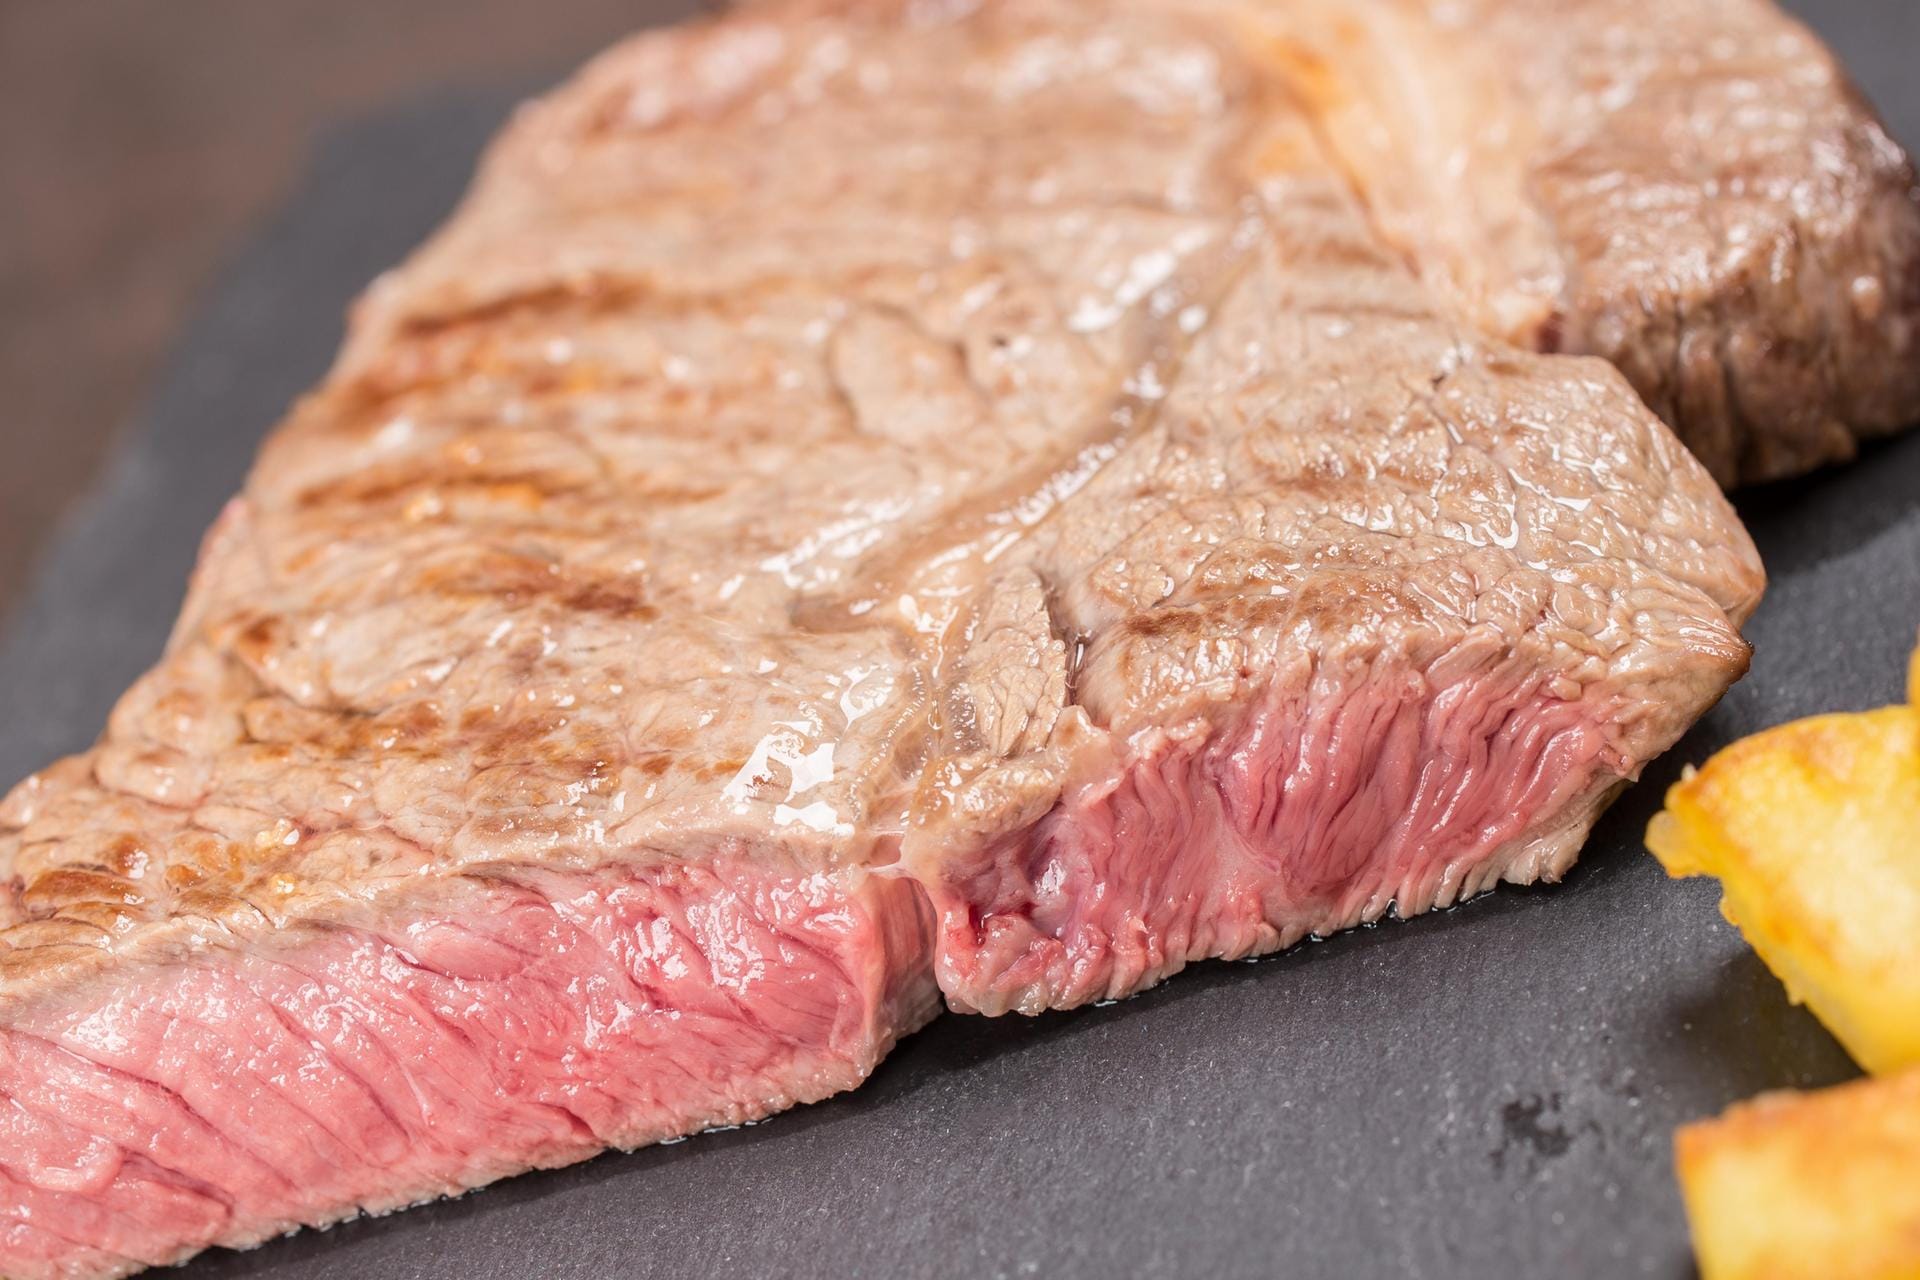 So ist es richtig: Dry Aged Beef wird am besten rare medium mit knackig-gebräunter Oberfläche und saftig-rotem Inneren gegessen. Zum Würzen bestes Salz und feiner Pfeffer – mehr ist nicht nötig.